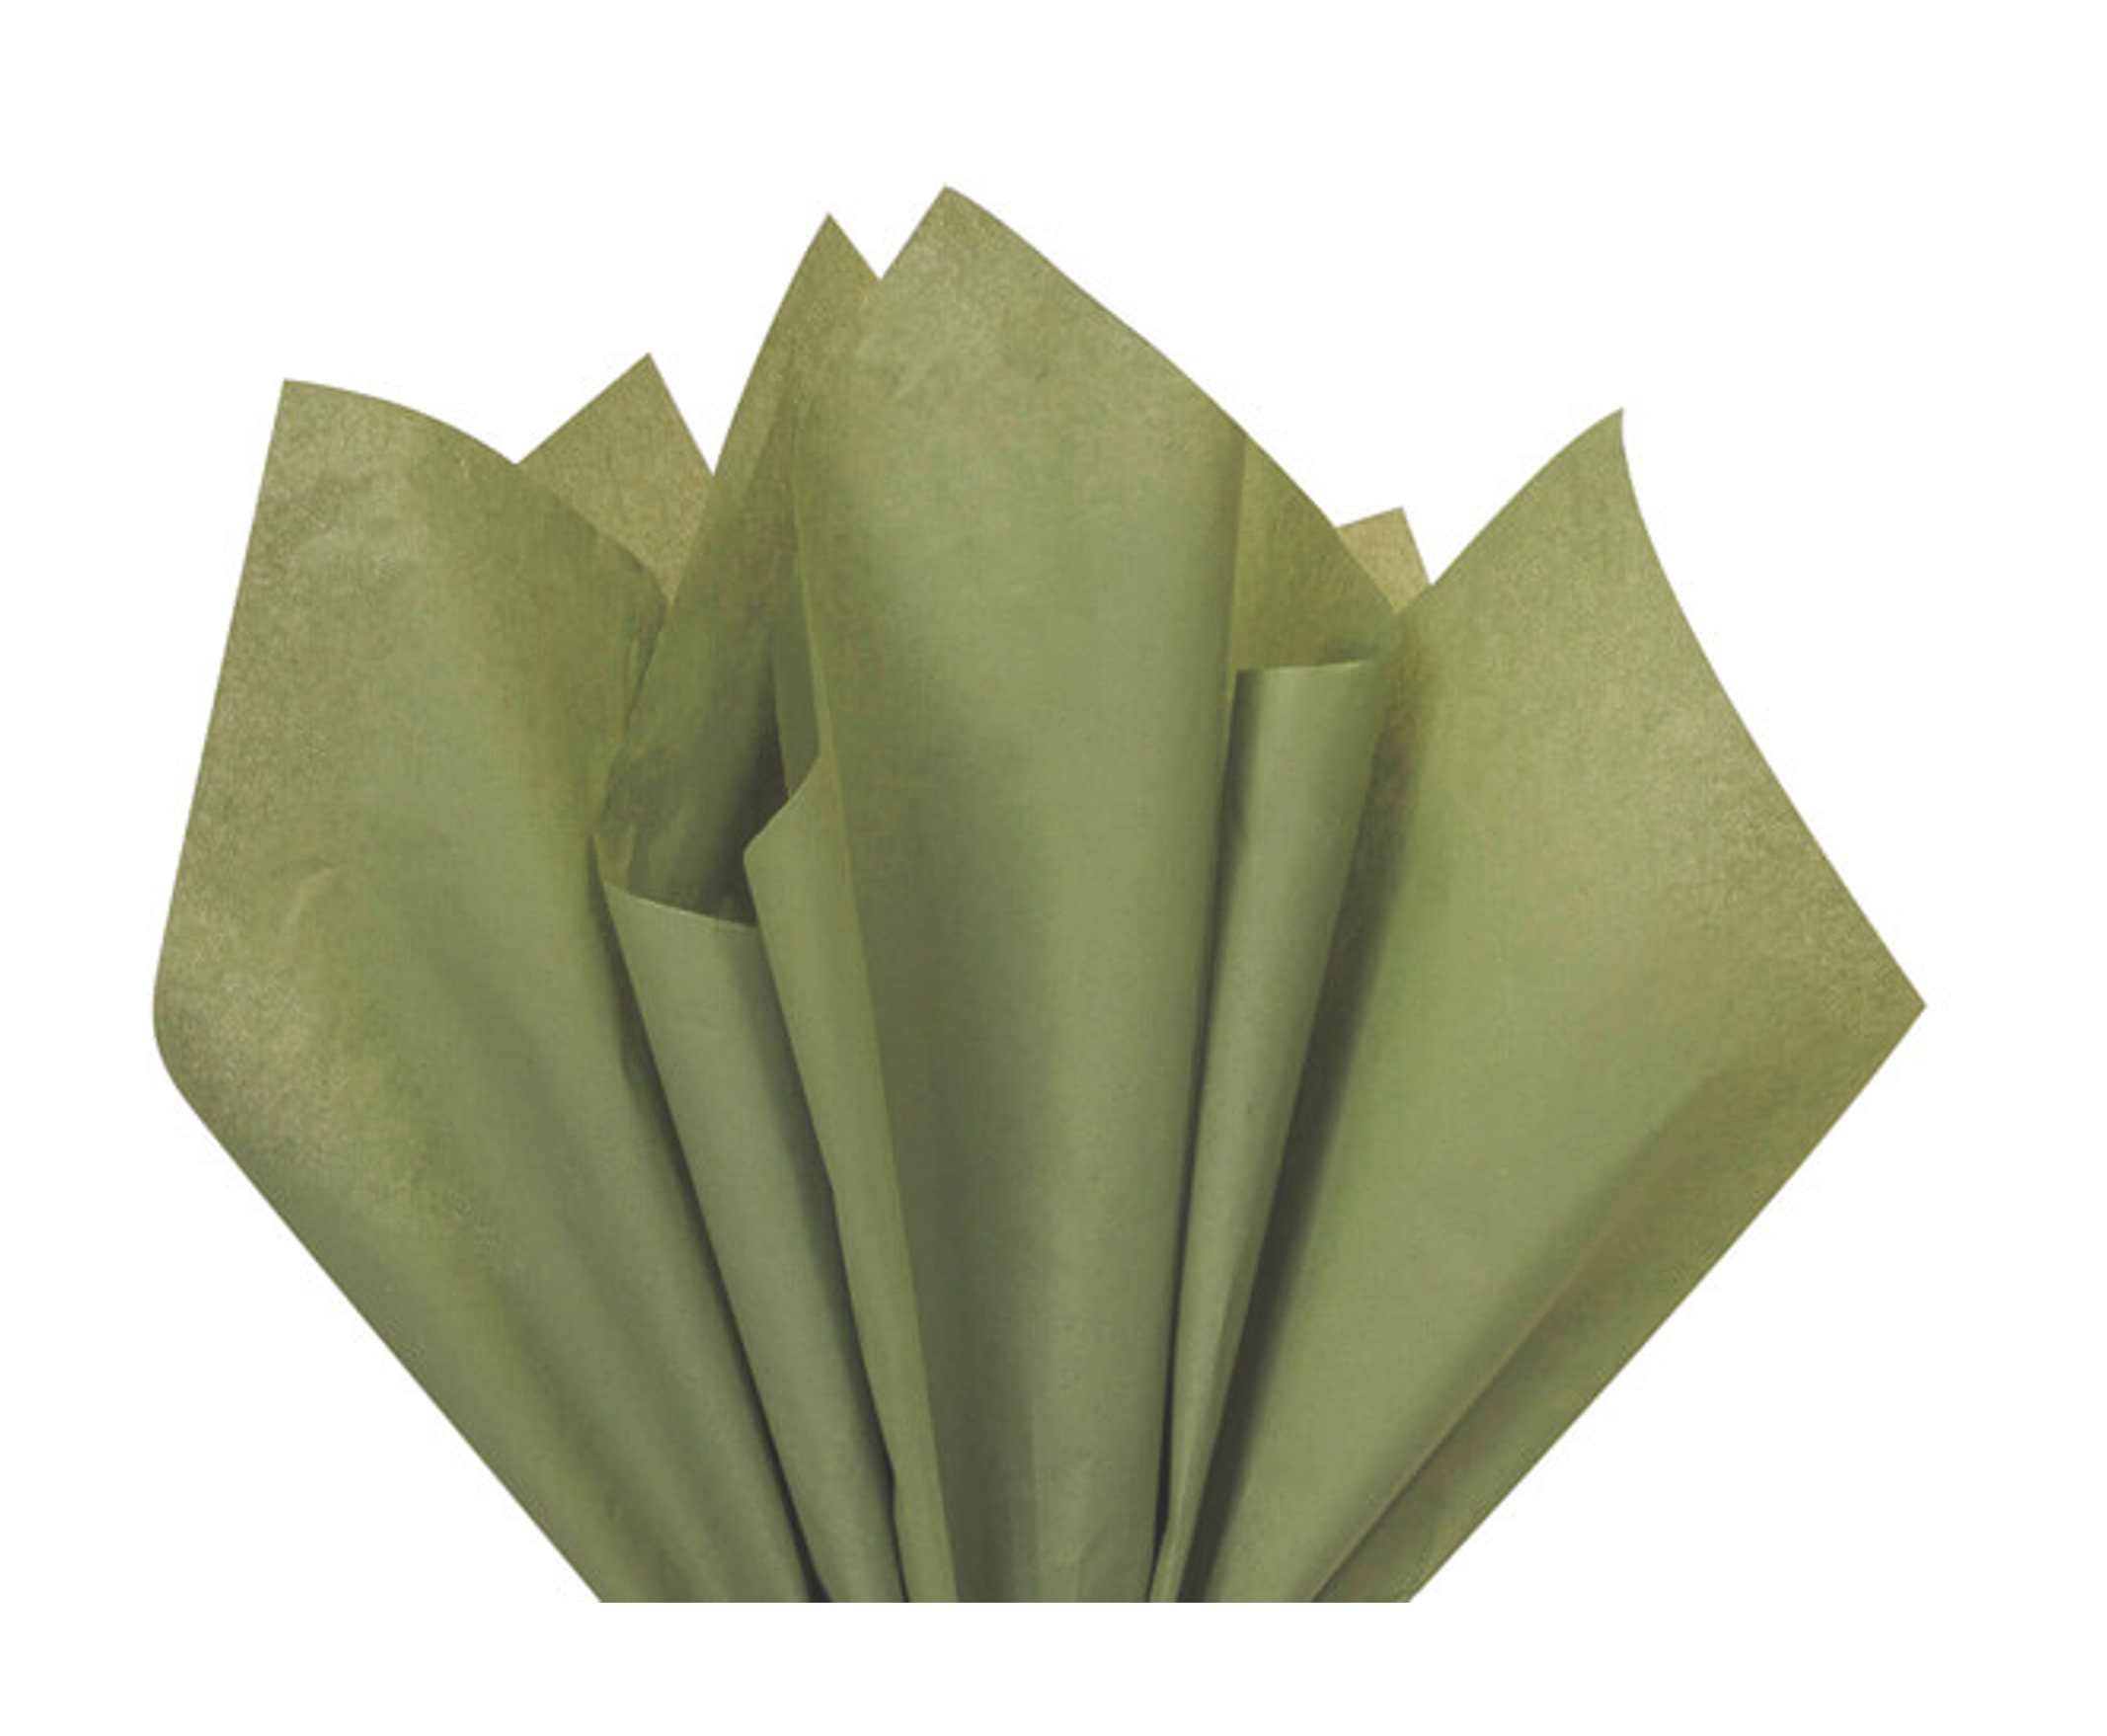 Shades of Teal Premium Tissue Paper, Premium Gift Wrap, Green Gift Wrap, Green  Tissue Paper 10x Sheets of Chosen Colour 